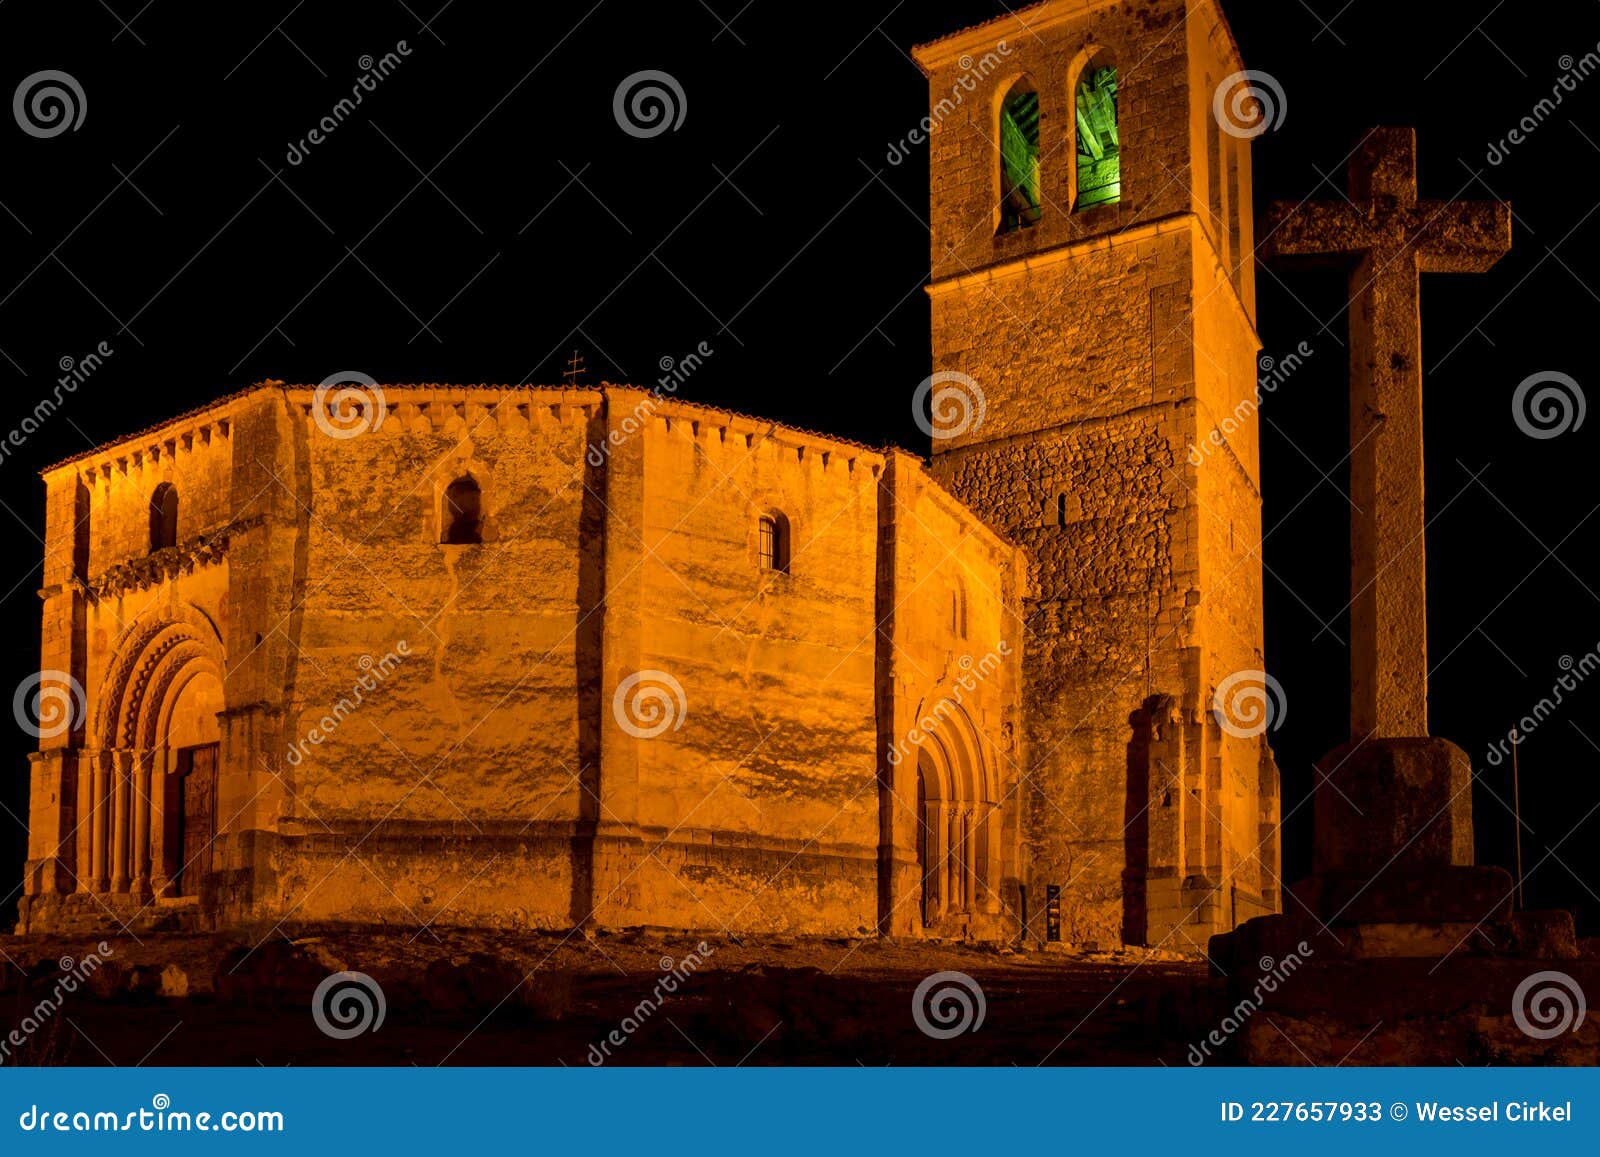 iglesia de la vera cruz by night, segovia, spain